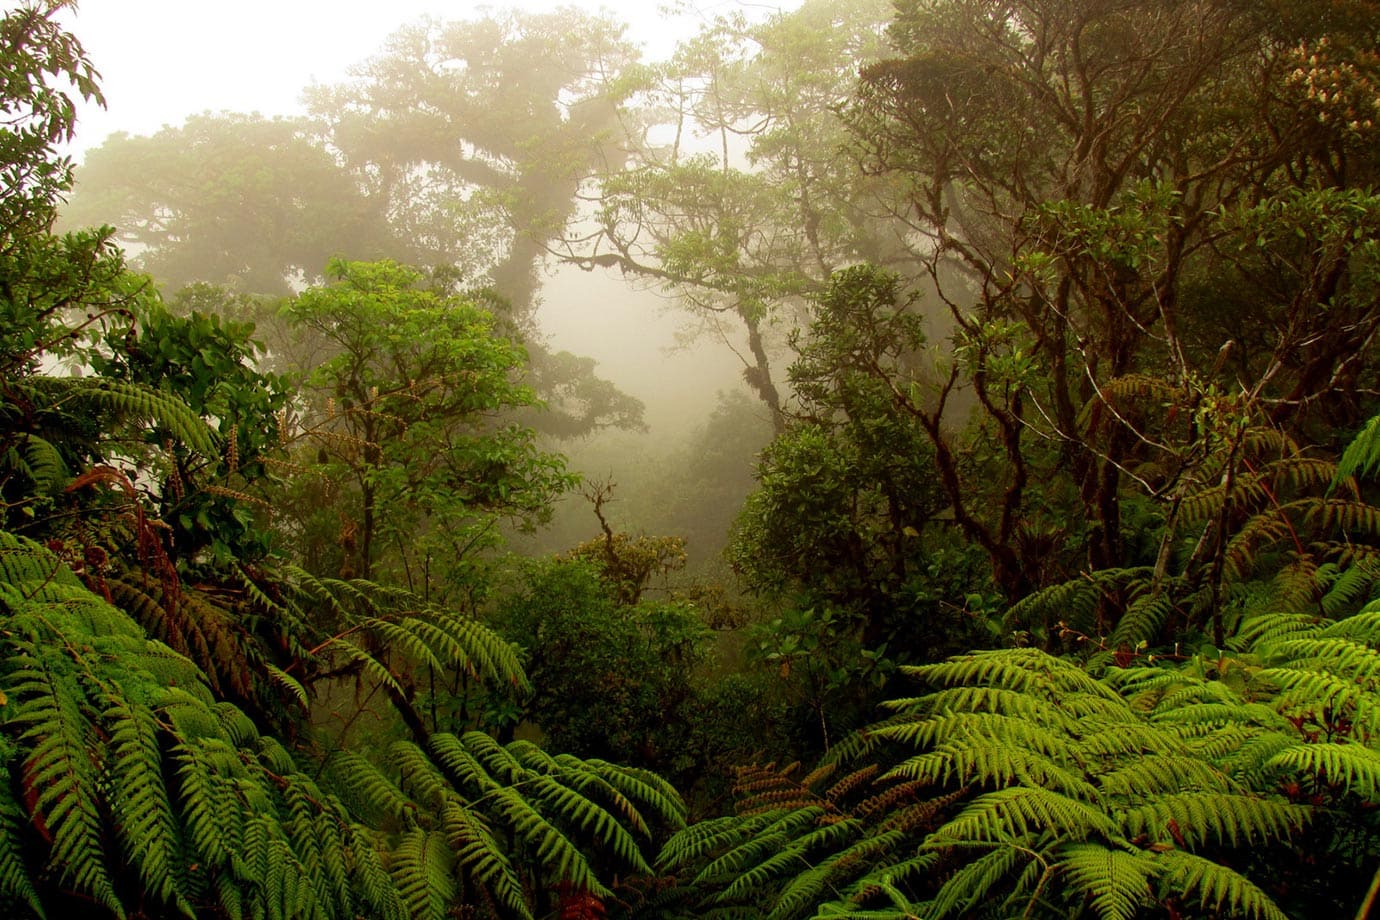 Monteverde Cloud Forest Biological Reserve